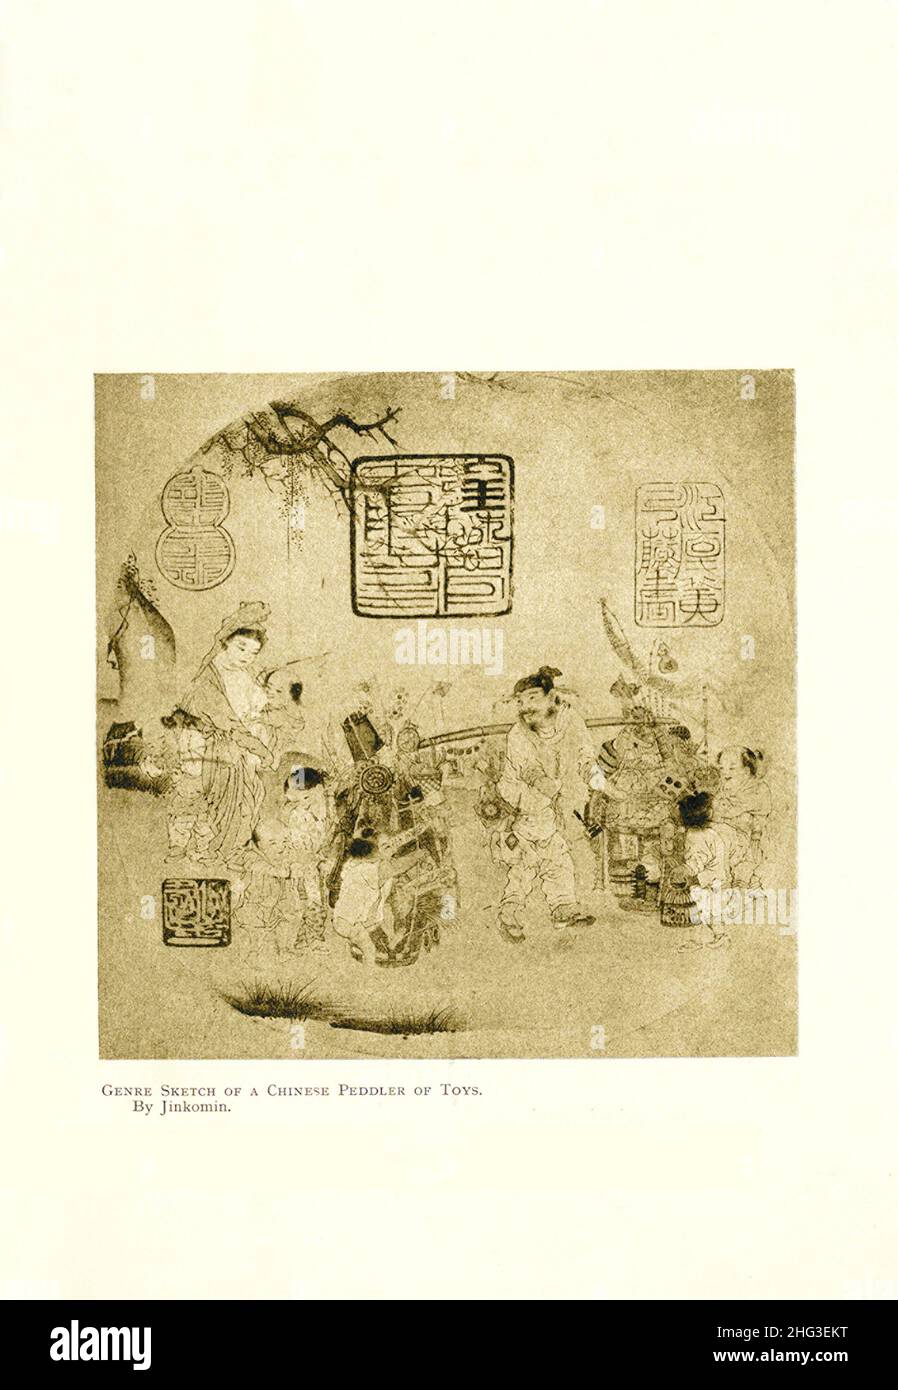 Genre-Skizze eines chinesischen Spielzeugpedlers. Von Jinkomin. Reproduktion der Buchdarstellung von 1912 Stockfoto